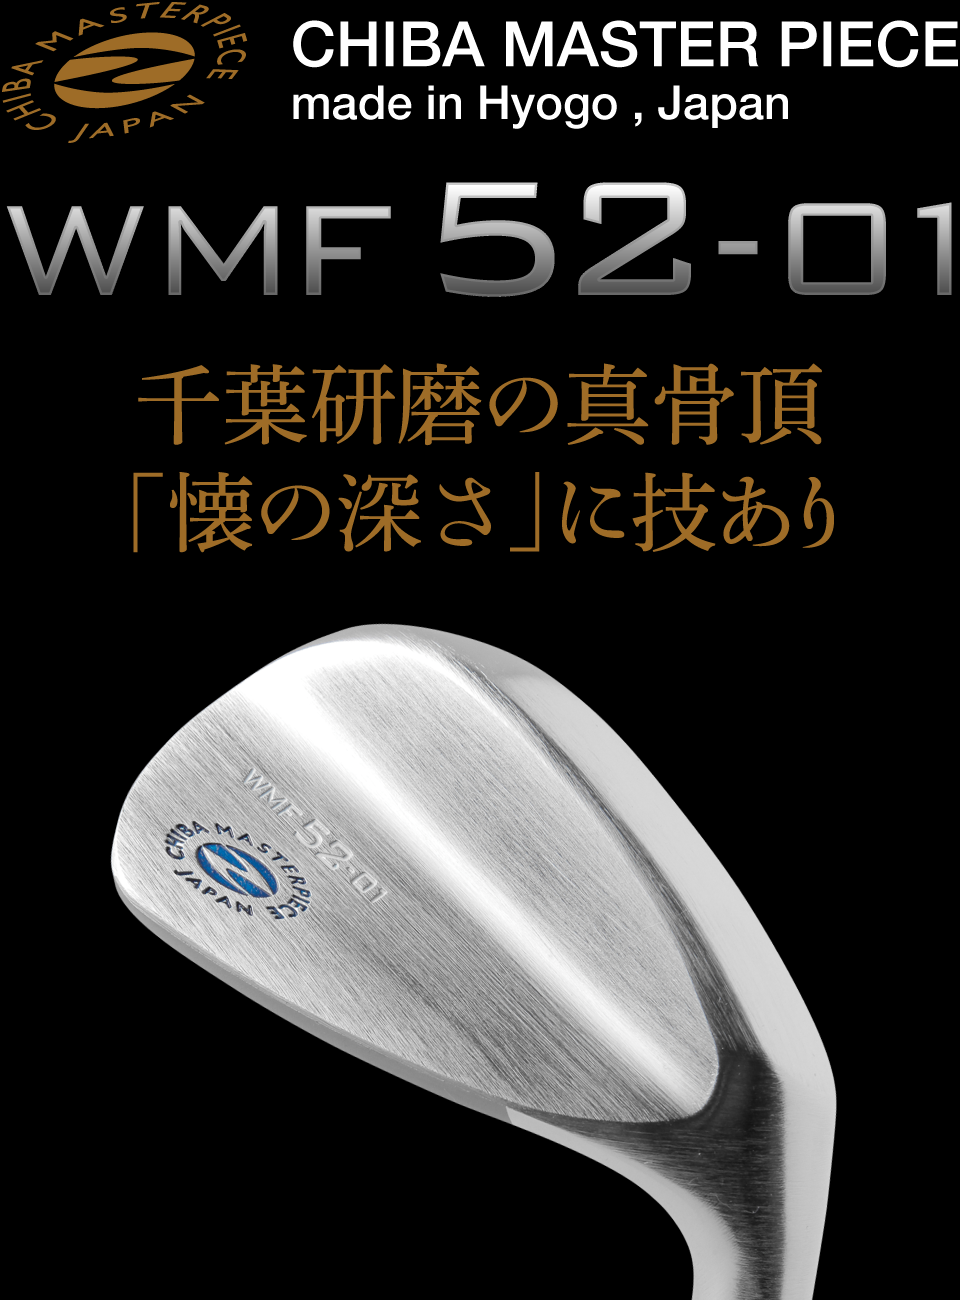 千葉研磨の真骨頂「懐の深さ」に技あり WMF52-01